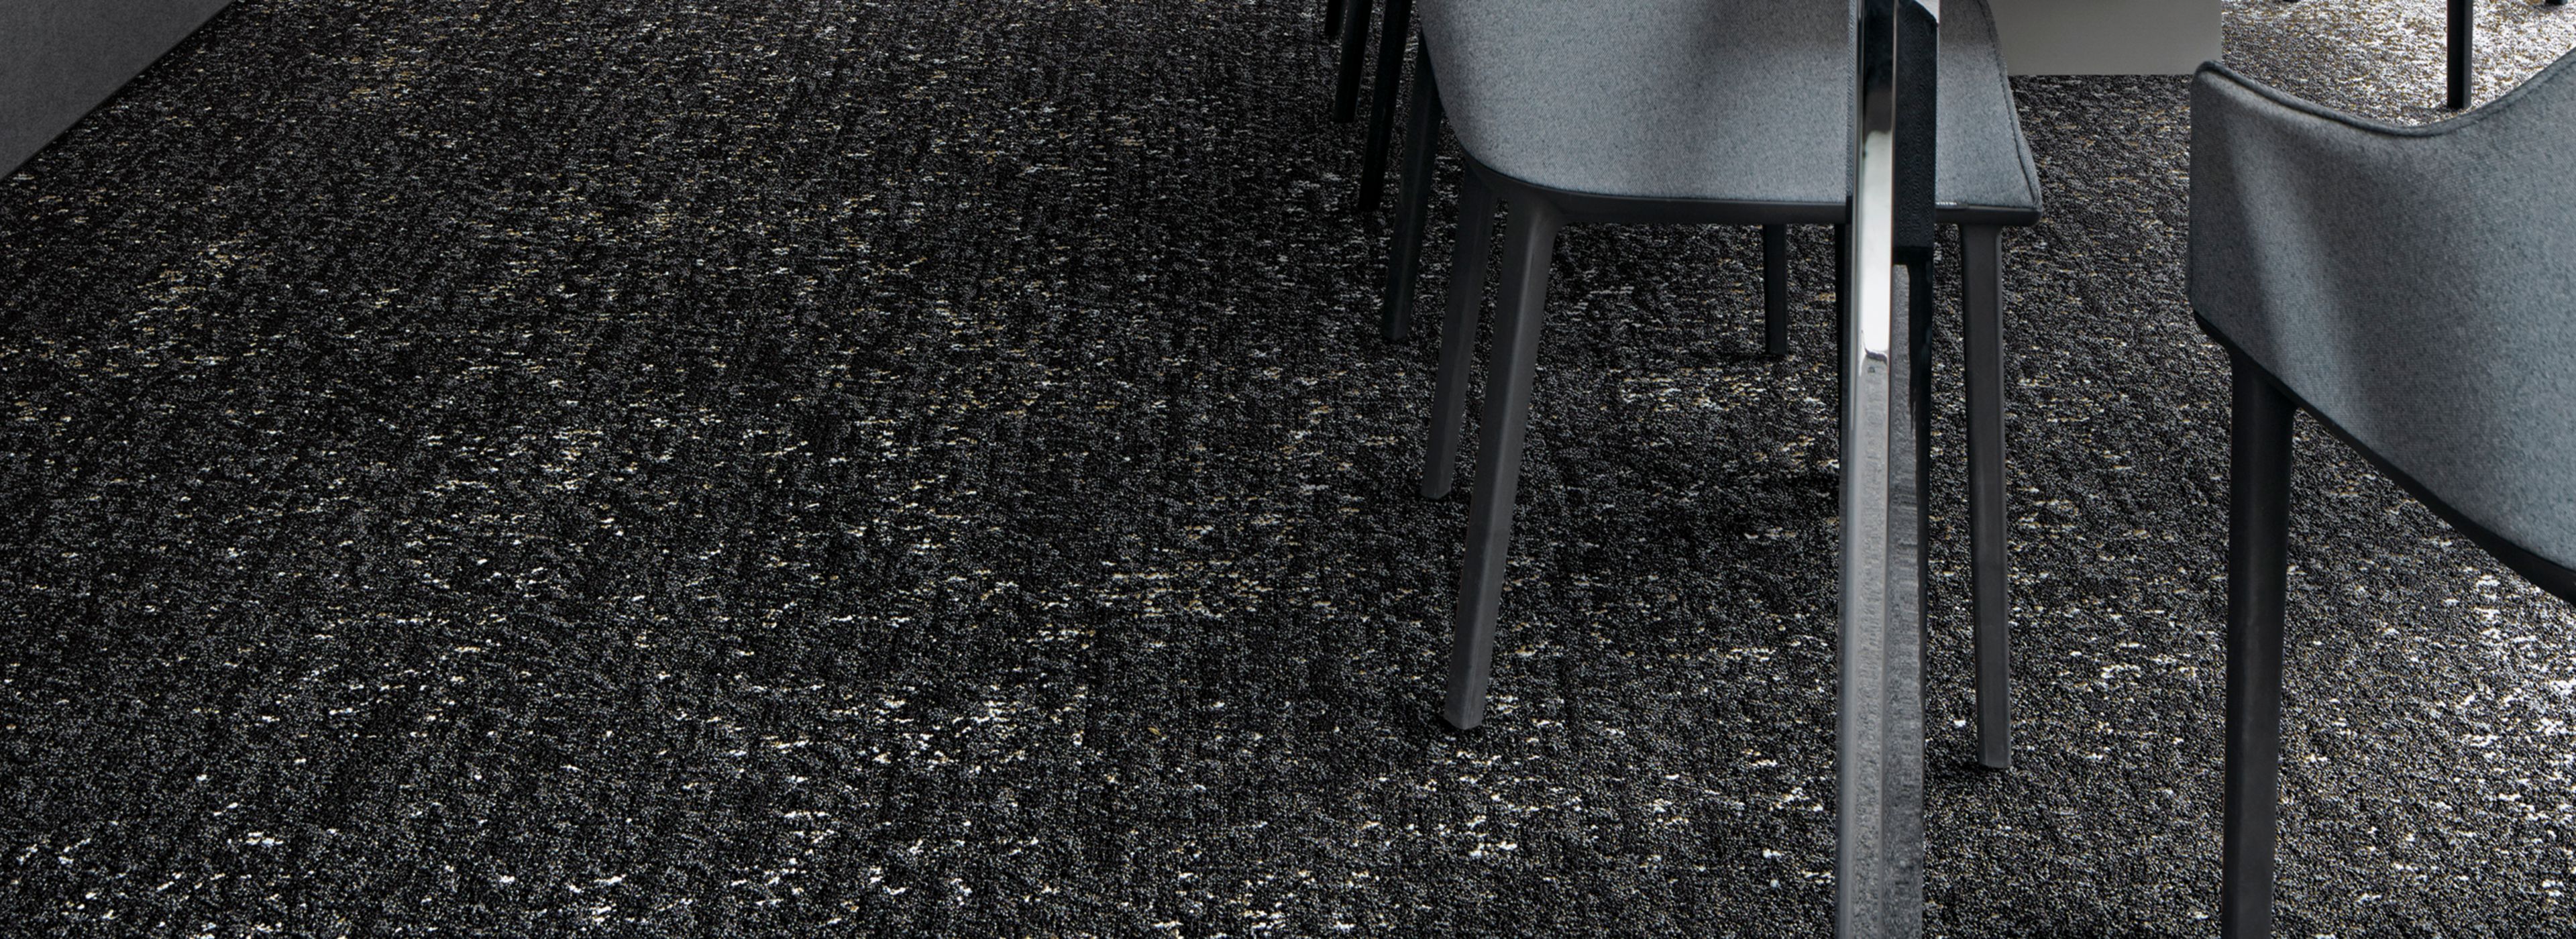 Interface Step Aside carpet tile in meeting room  Bildnummer 1